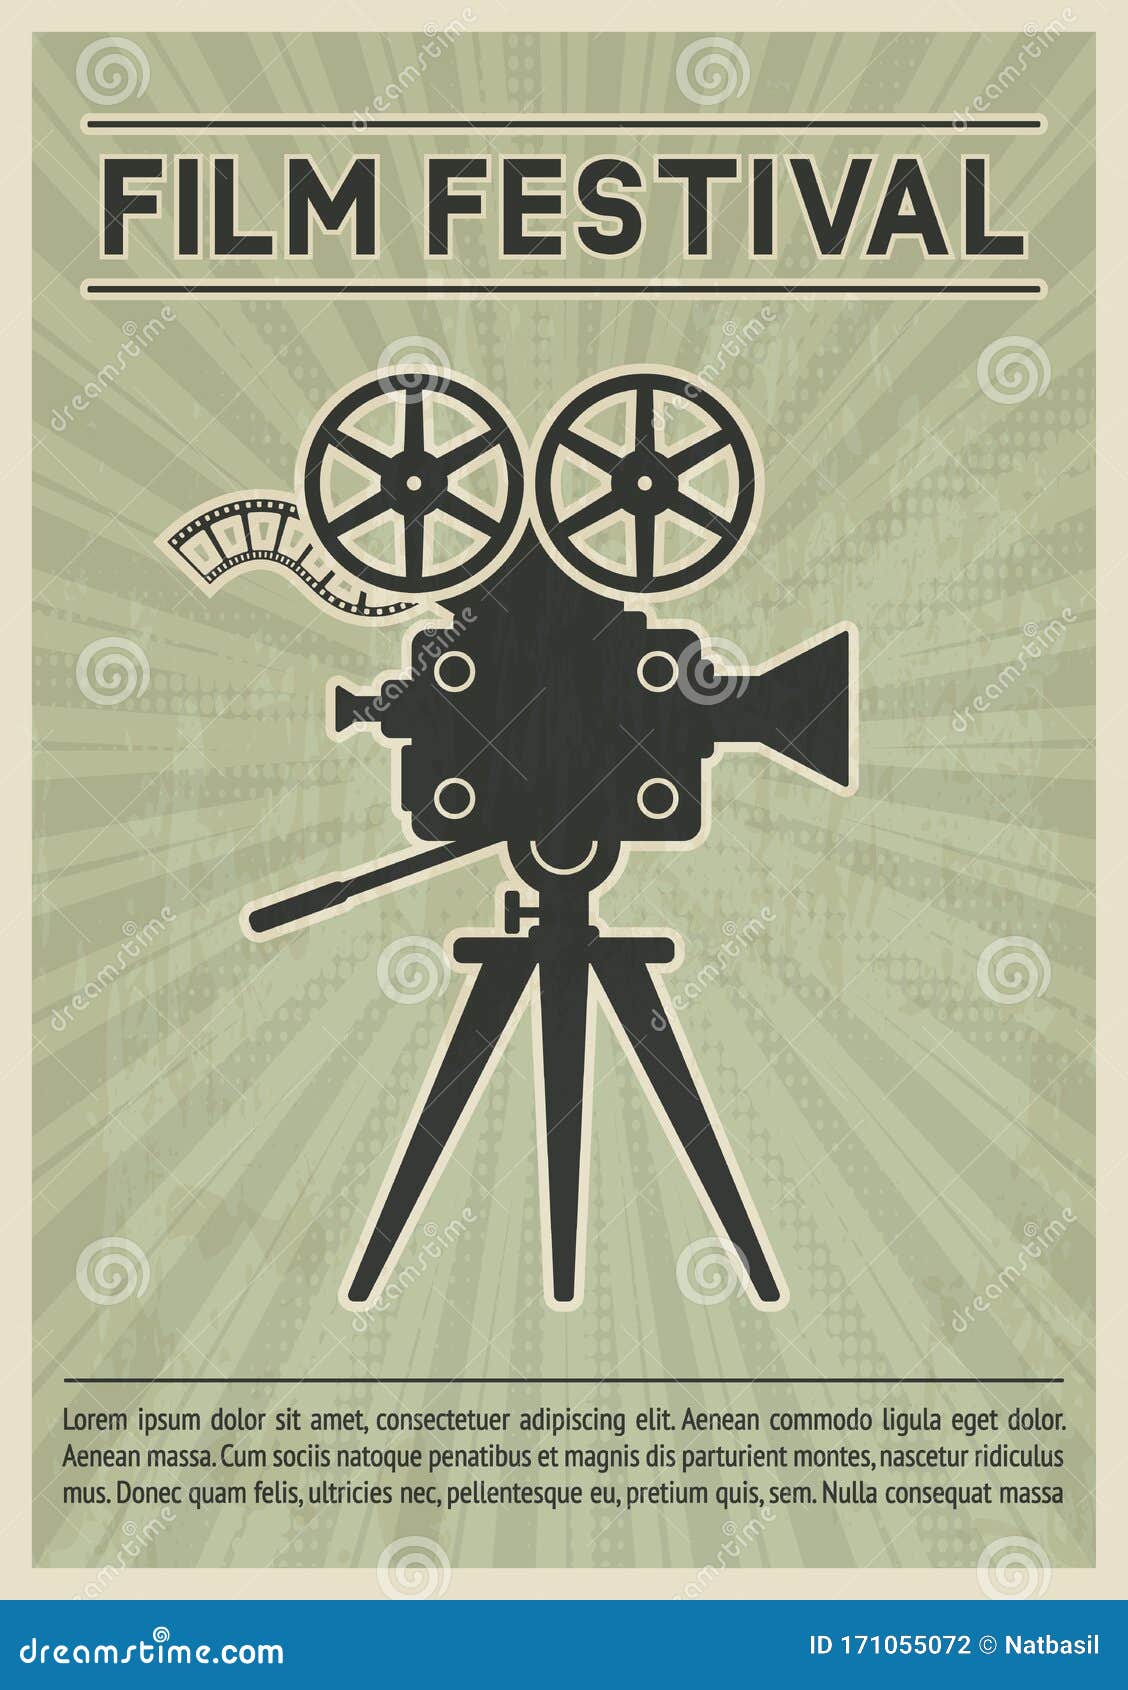 Film Festival Poster. Retro Movie Camera Black Silhouette Stock Vector ...